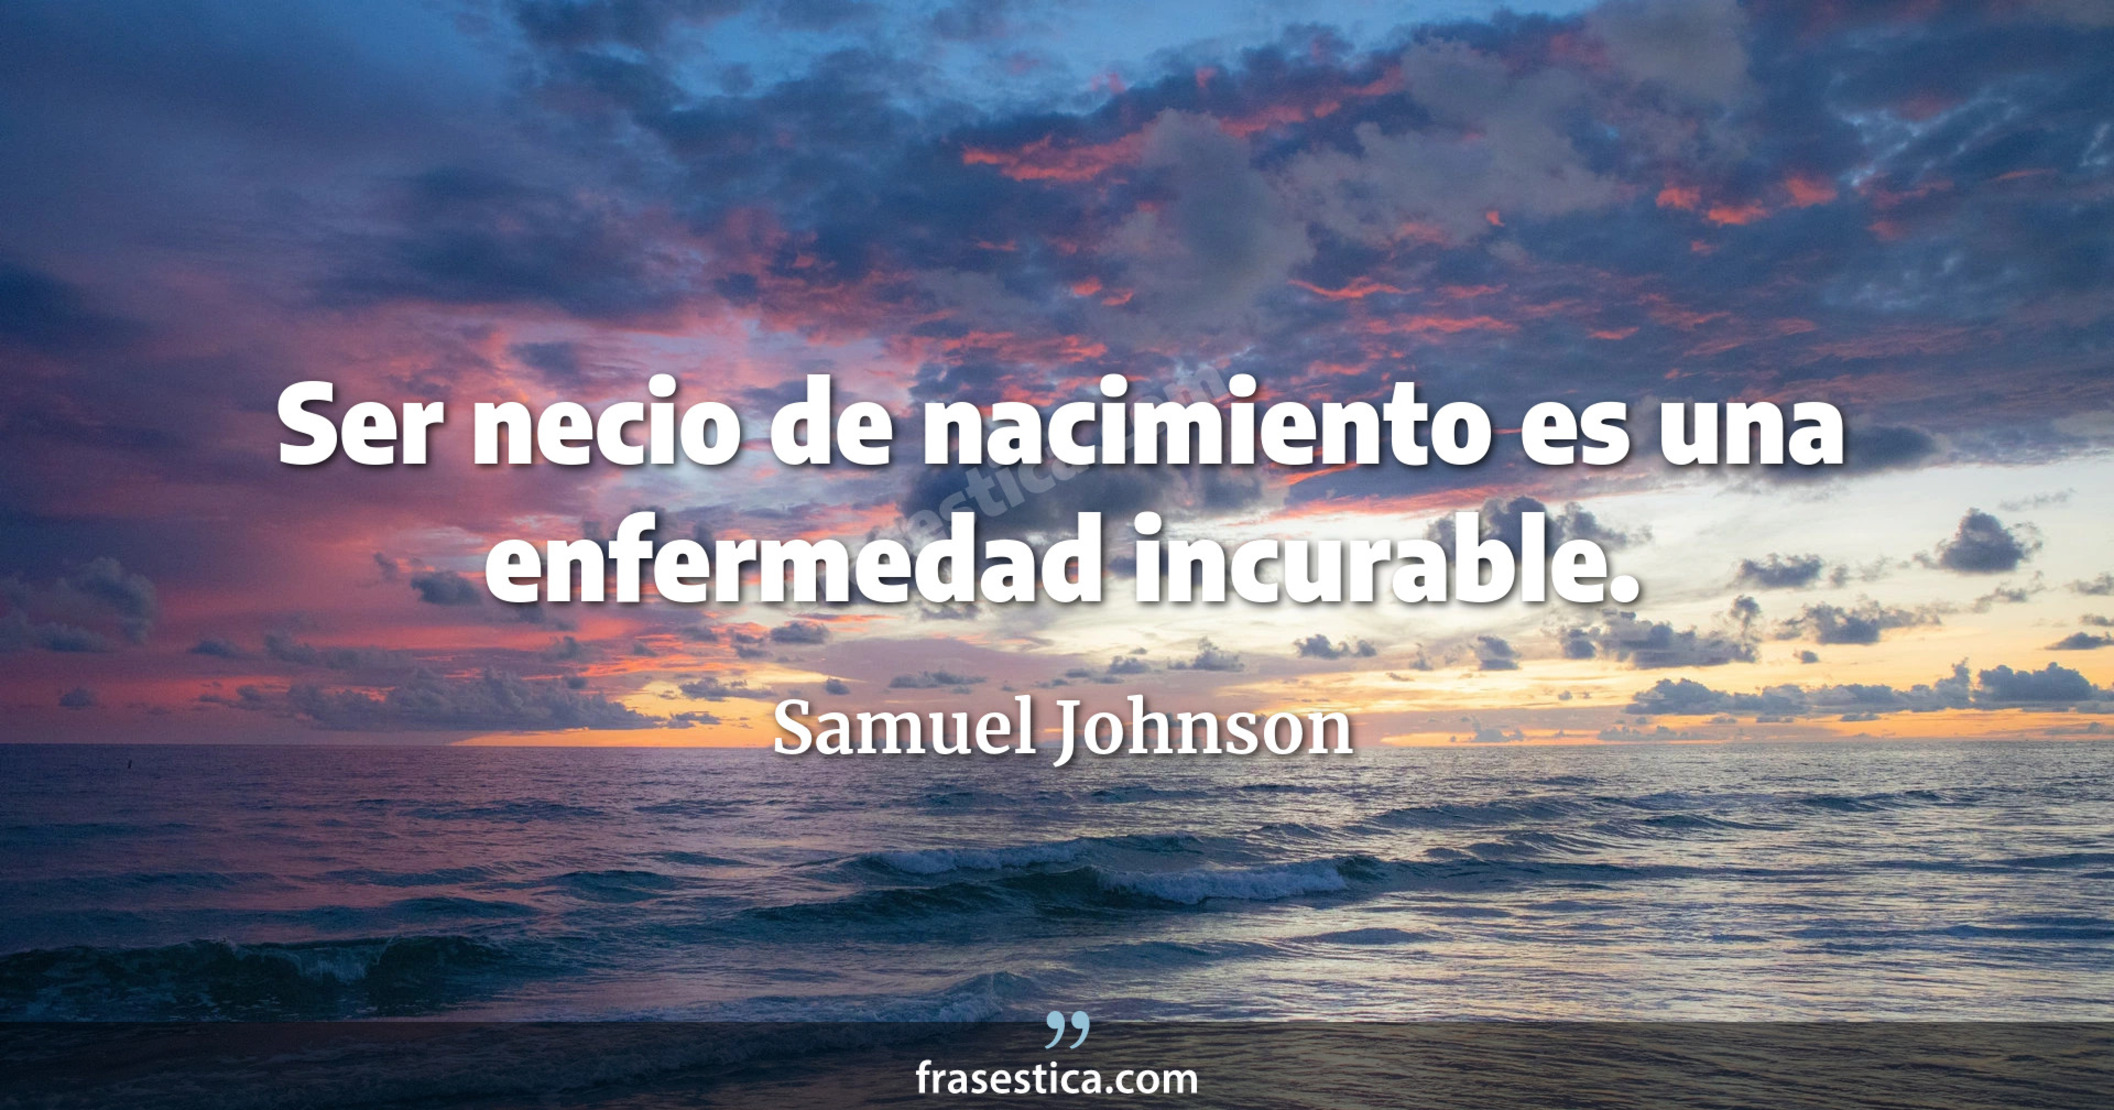 Ser necio de nacimiento es una enfermedad incurable. - Samuel Johnson